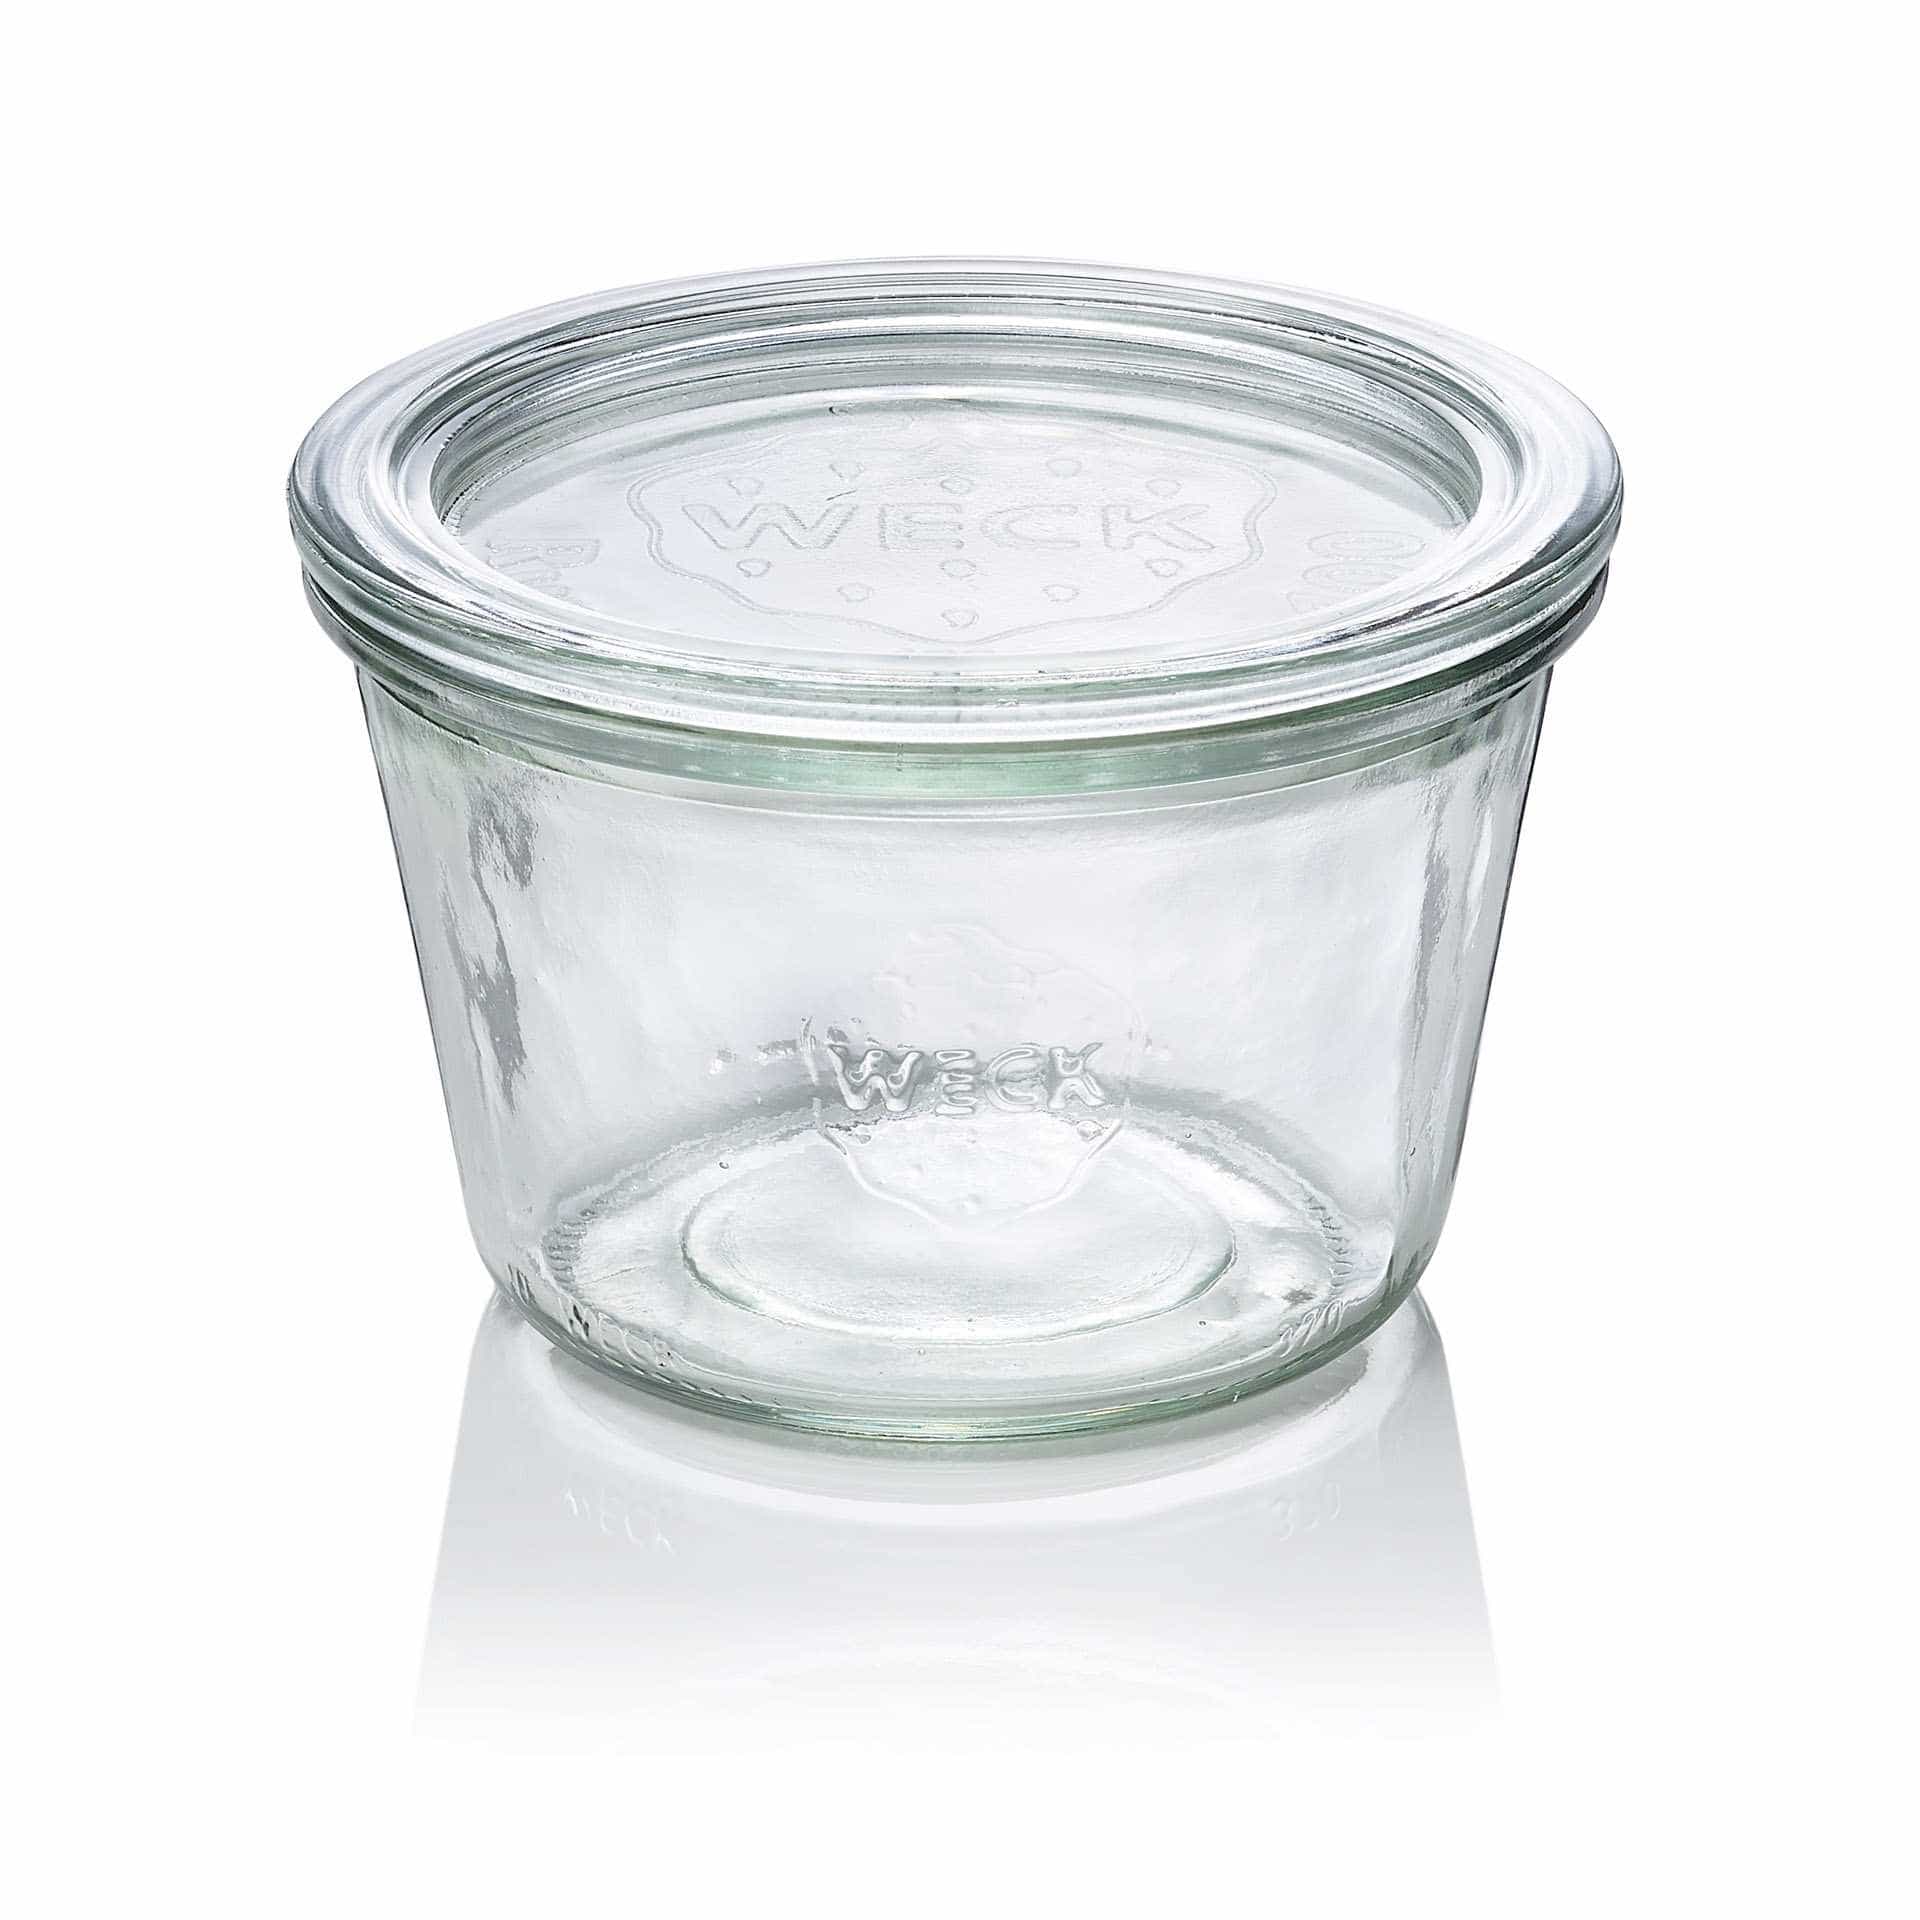 Sturzglas - Set á 6 Stück - Serie Overturn - Abm. 6,9 cm - Ø oben / unten 10,0 / 10,7 cm - Inhalt 0,37 l - Glas - 741-A